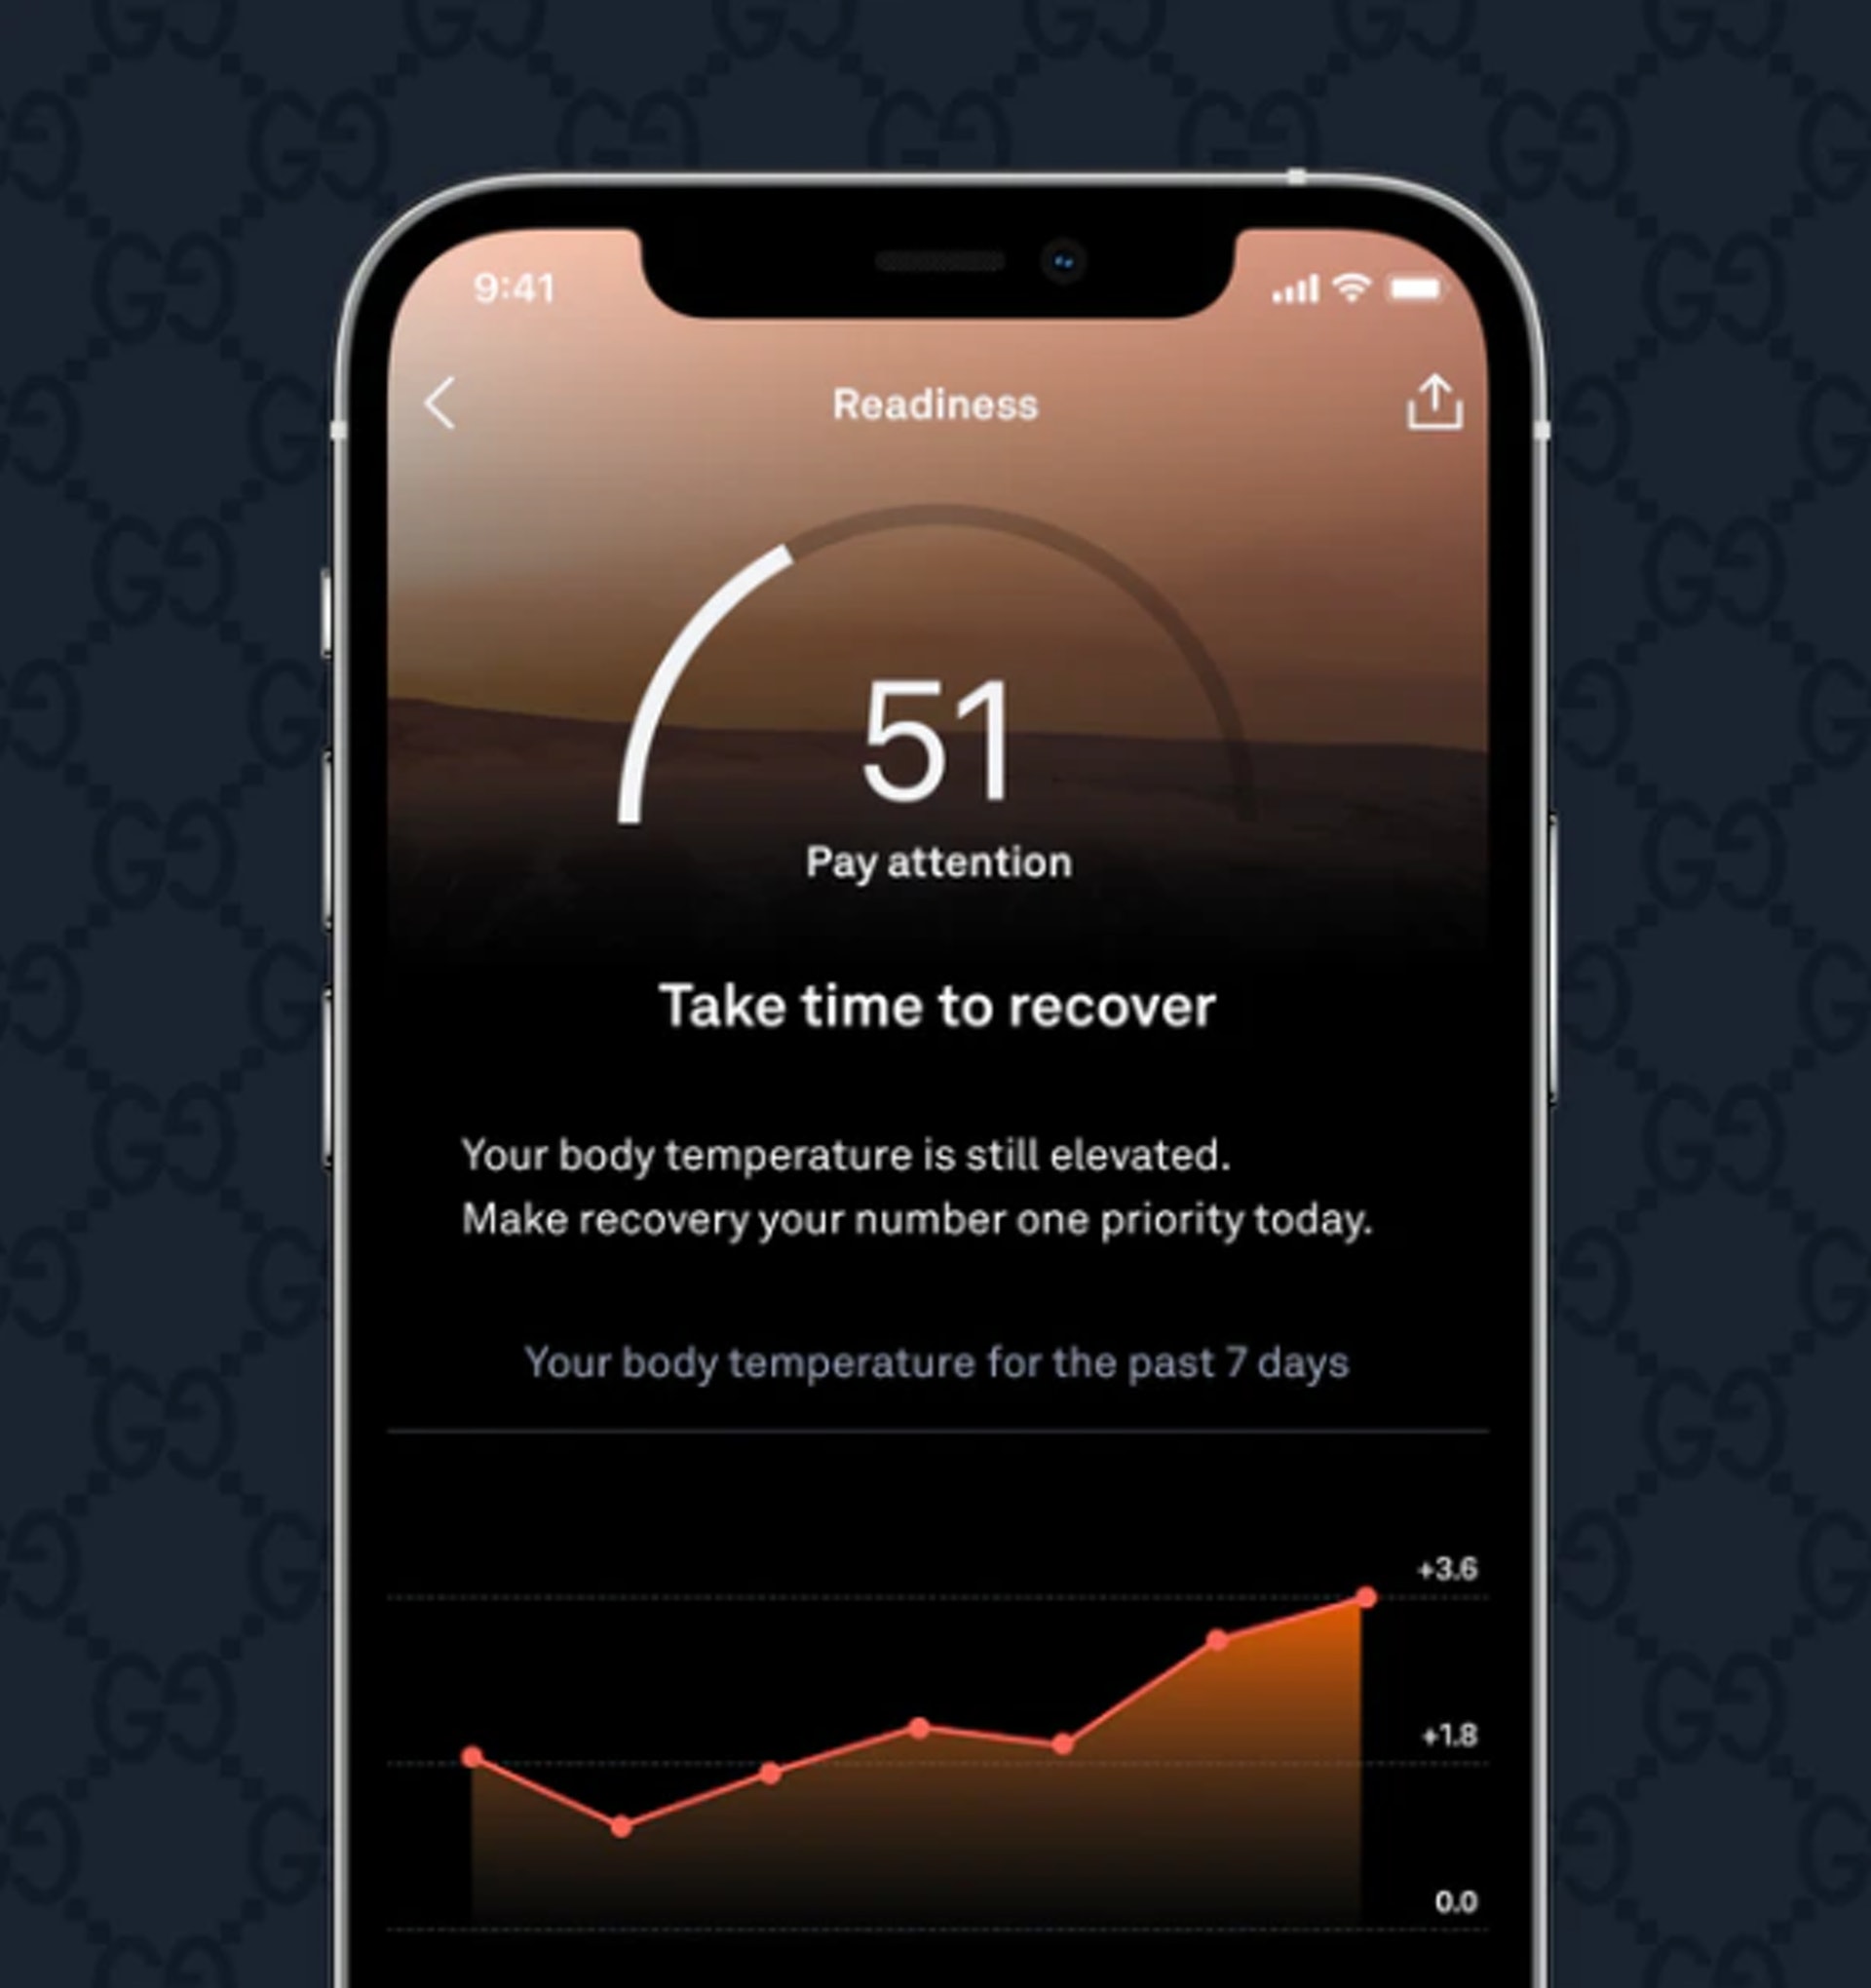 透過專用的 Oura App，用戶可以得到自己分別在睡眠（Sleep）、活動（Activity）及準備情況（Readiness）等三個日常分數，讓用戶更了解自己的身體狀況。